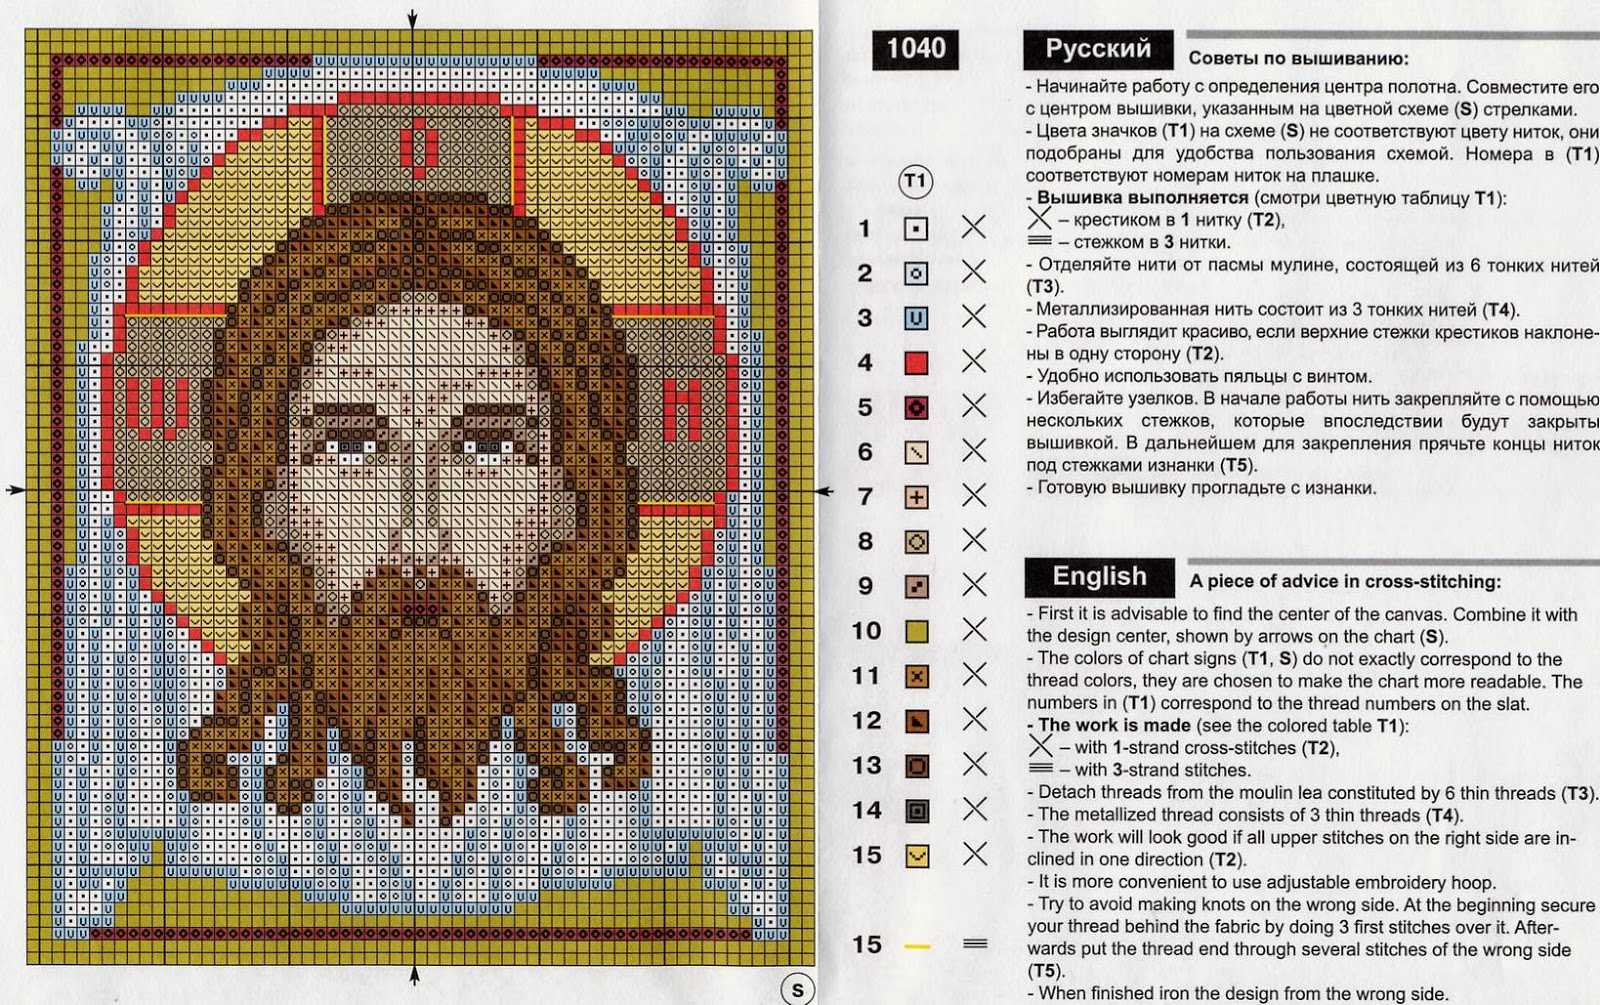 Лучшие схемы вышивки крестом: 7 популярных изображений икон